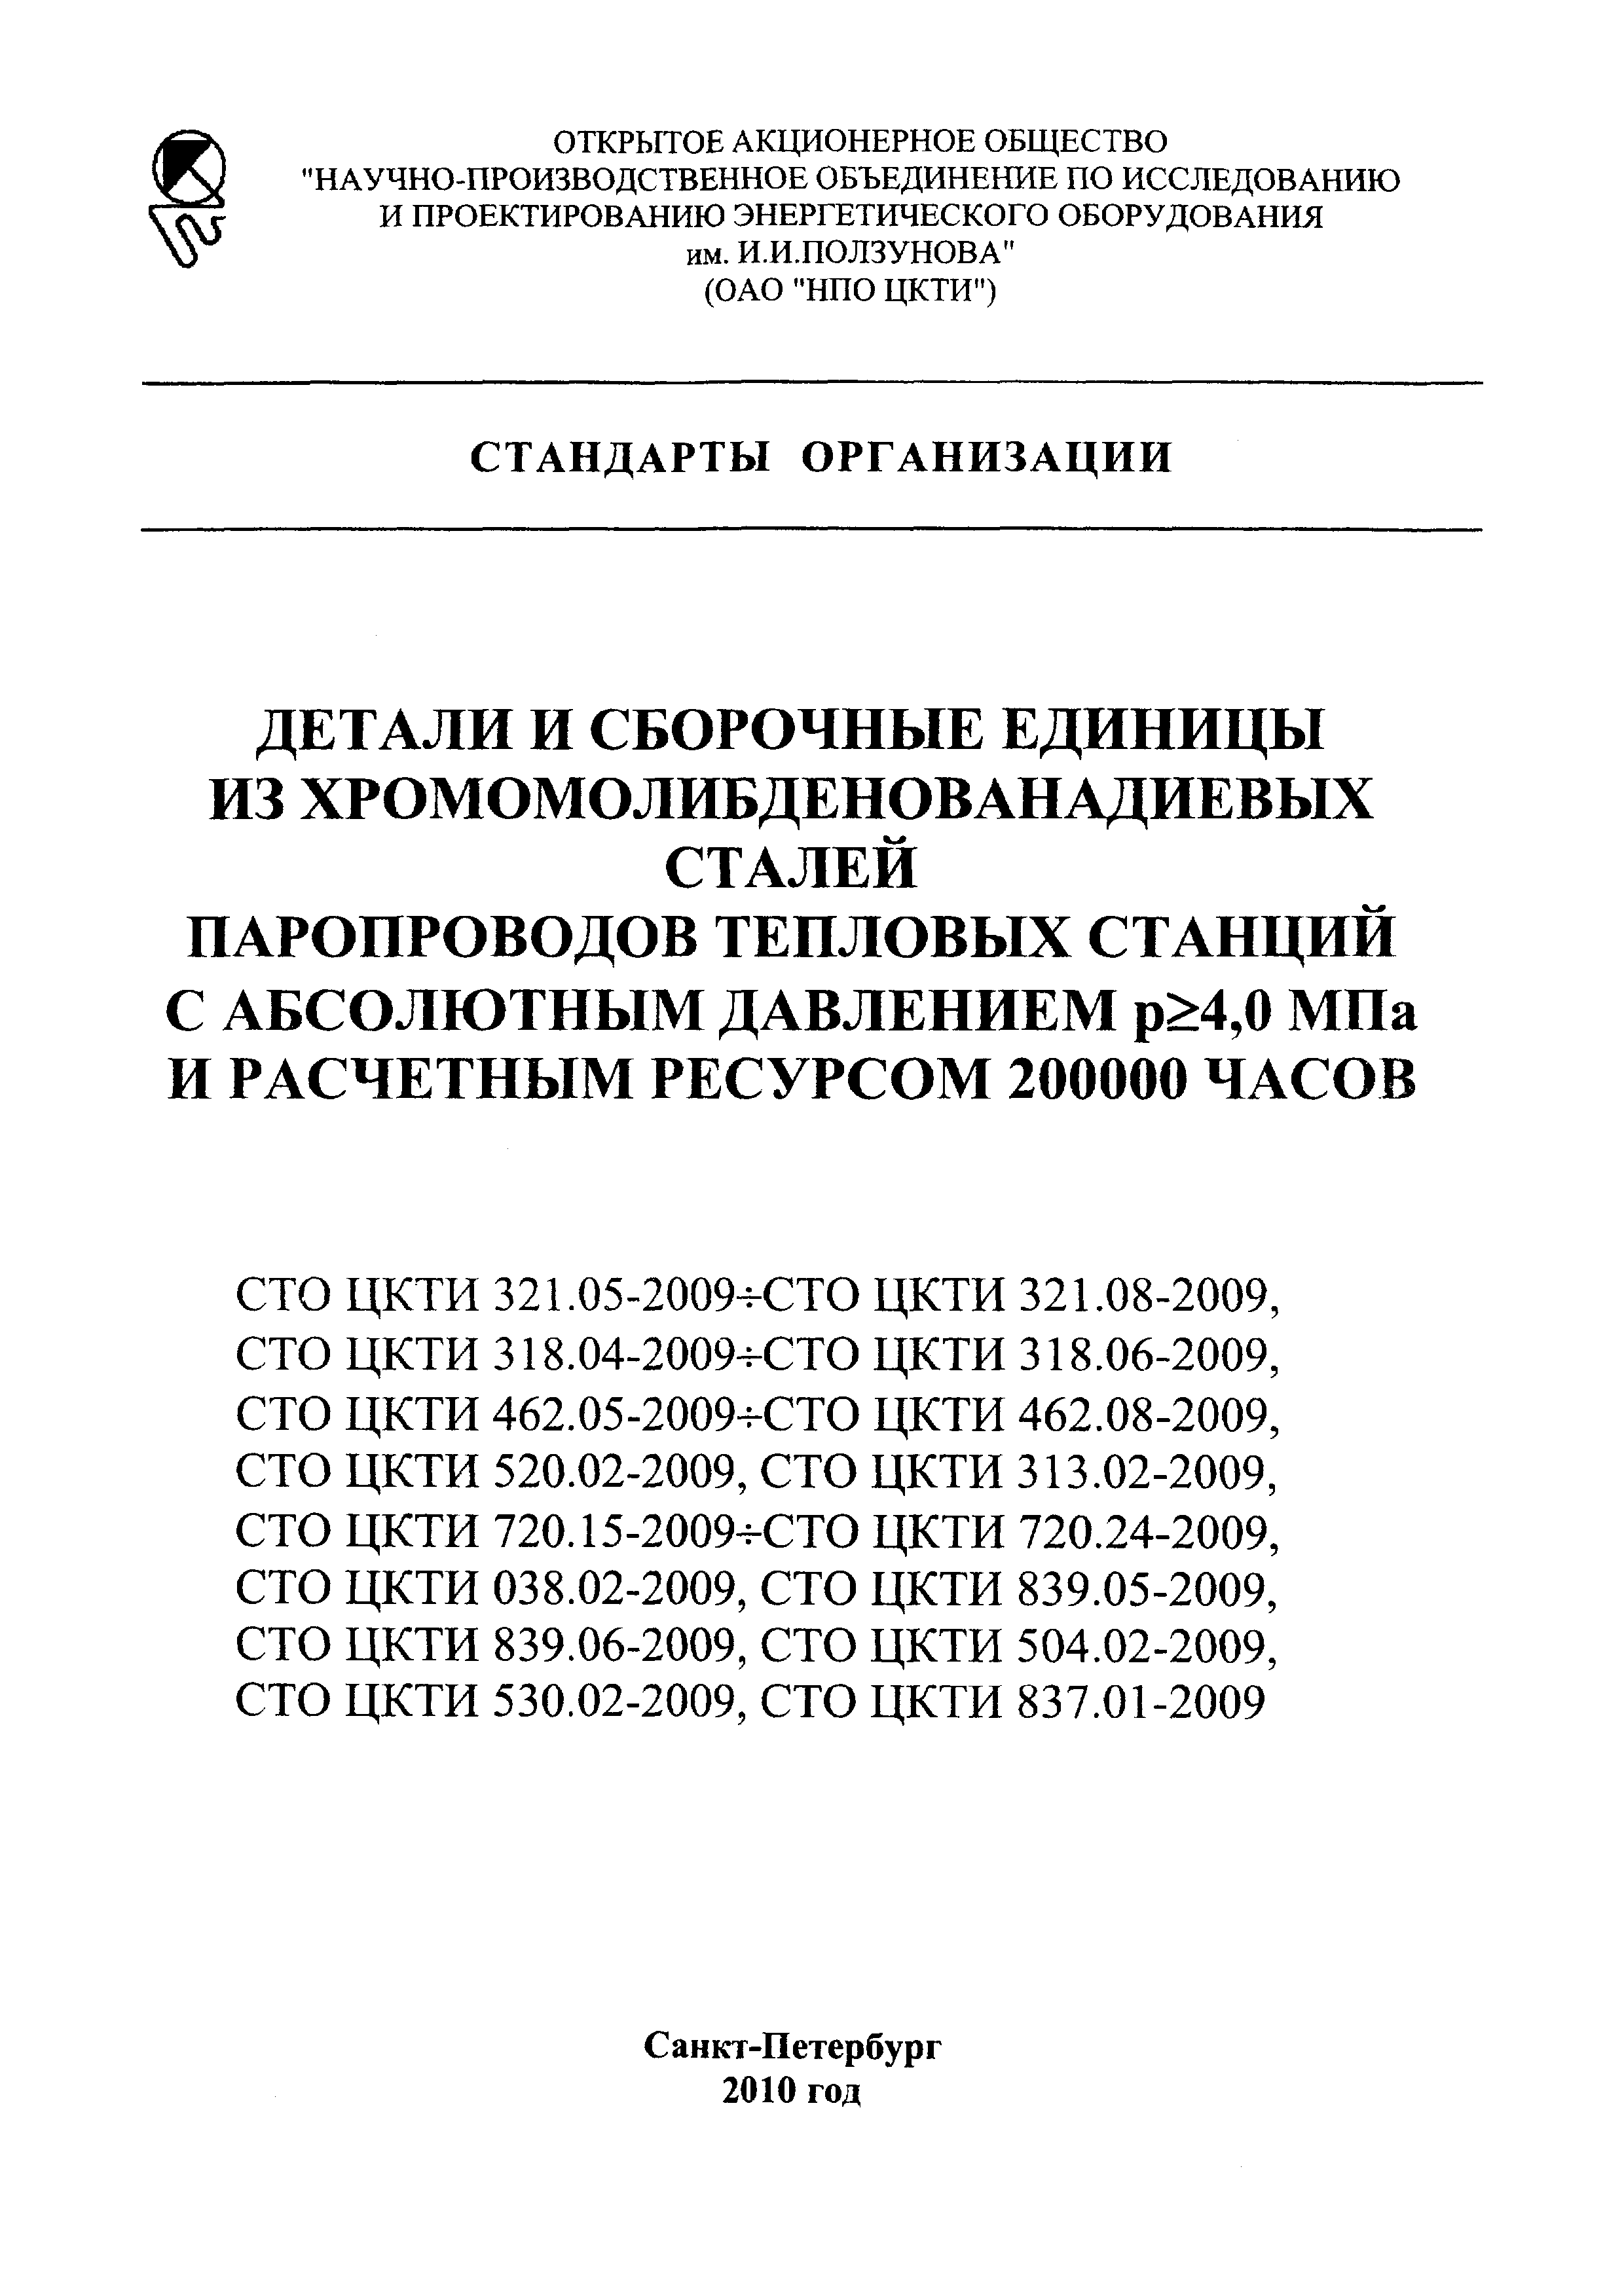 СТО ЦКТИ 720.15-2009